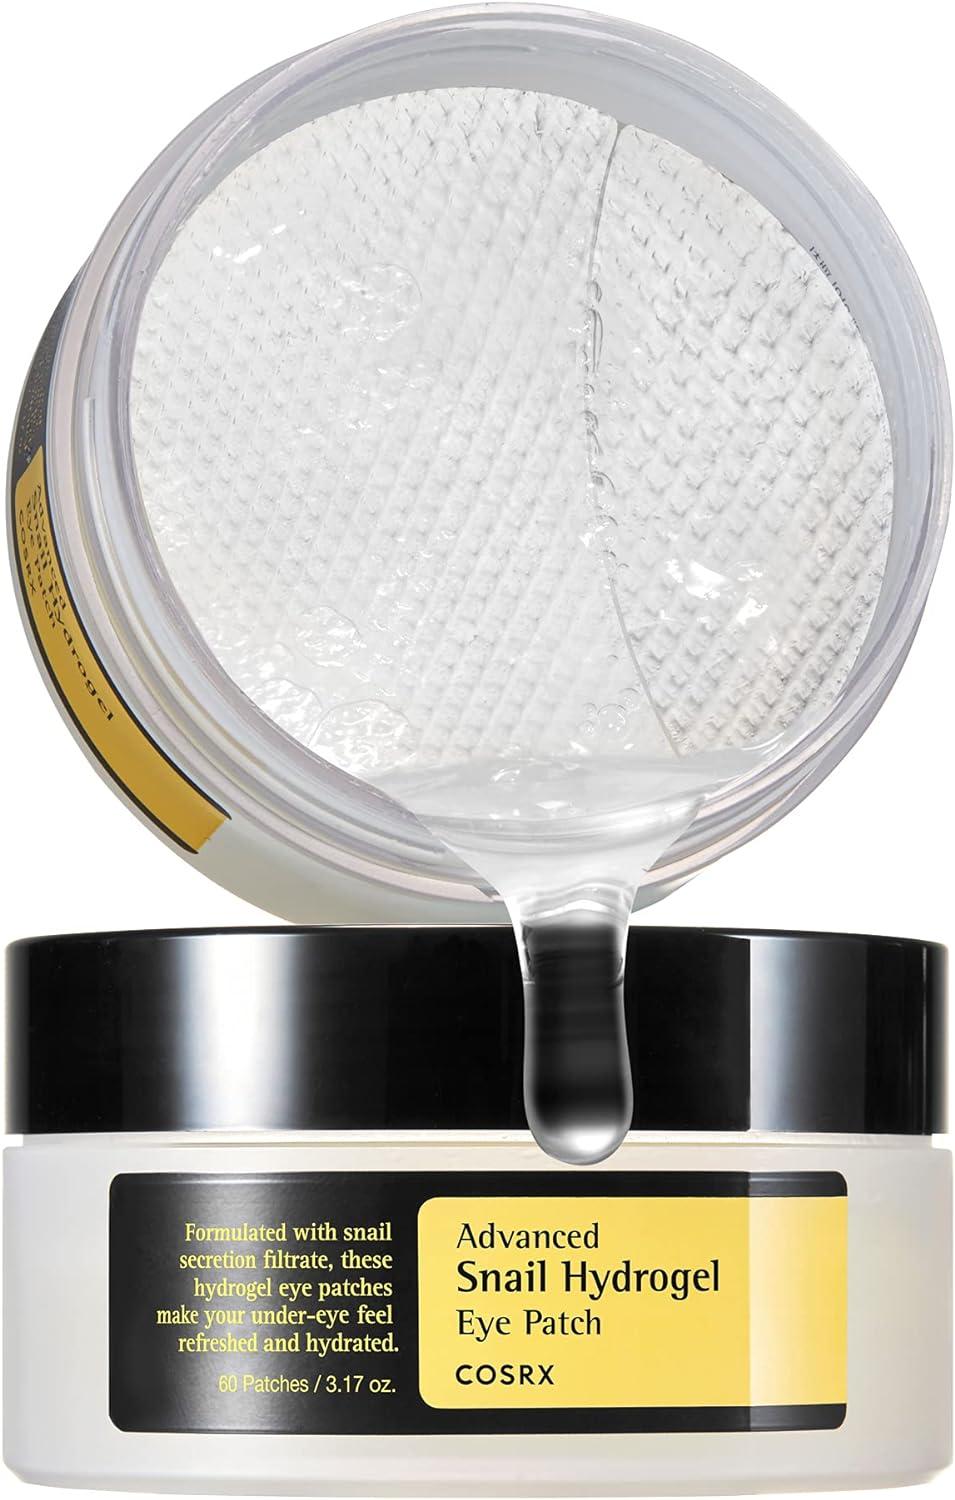 COSRX Advanced Snail Hydrogel Eye Patch 60 patchs (3,17 oz) | Masque sérum gel | Traitement sous les yeux, ridules, yeux gonflés, revitalise, rafraîchit, hydrate | Sans paraben, sans phtalates, soins coréens